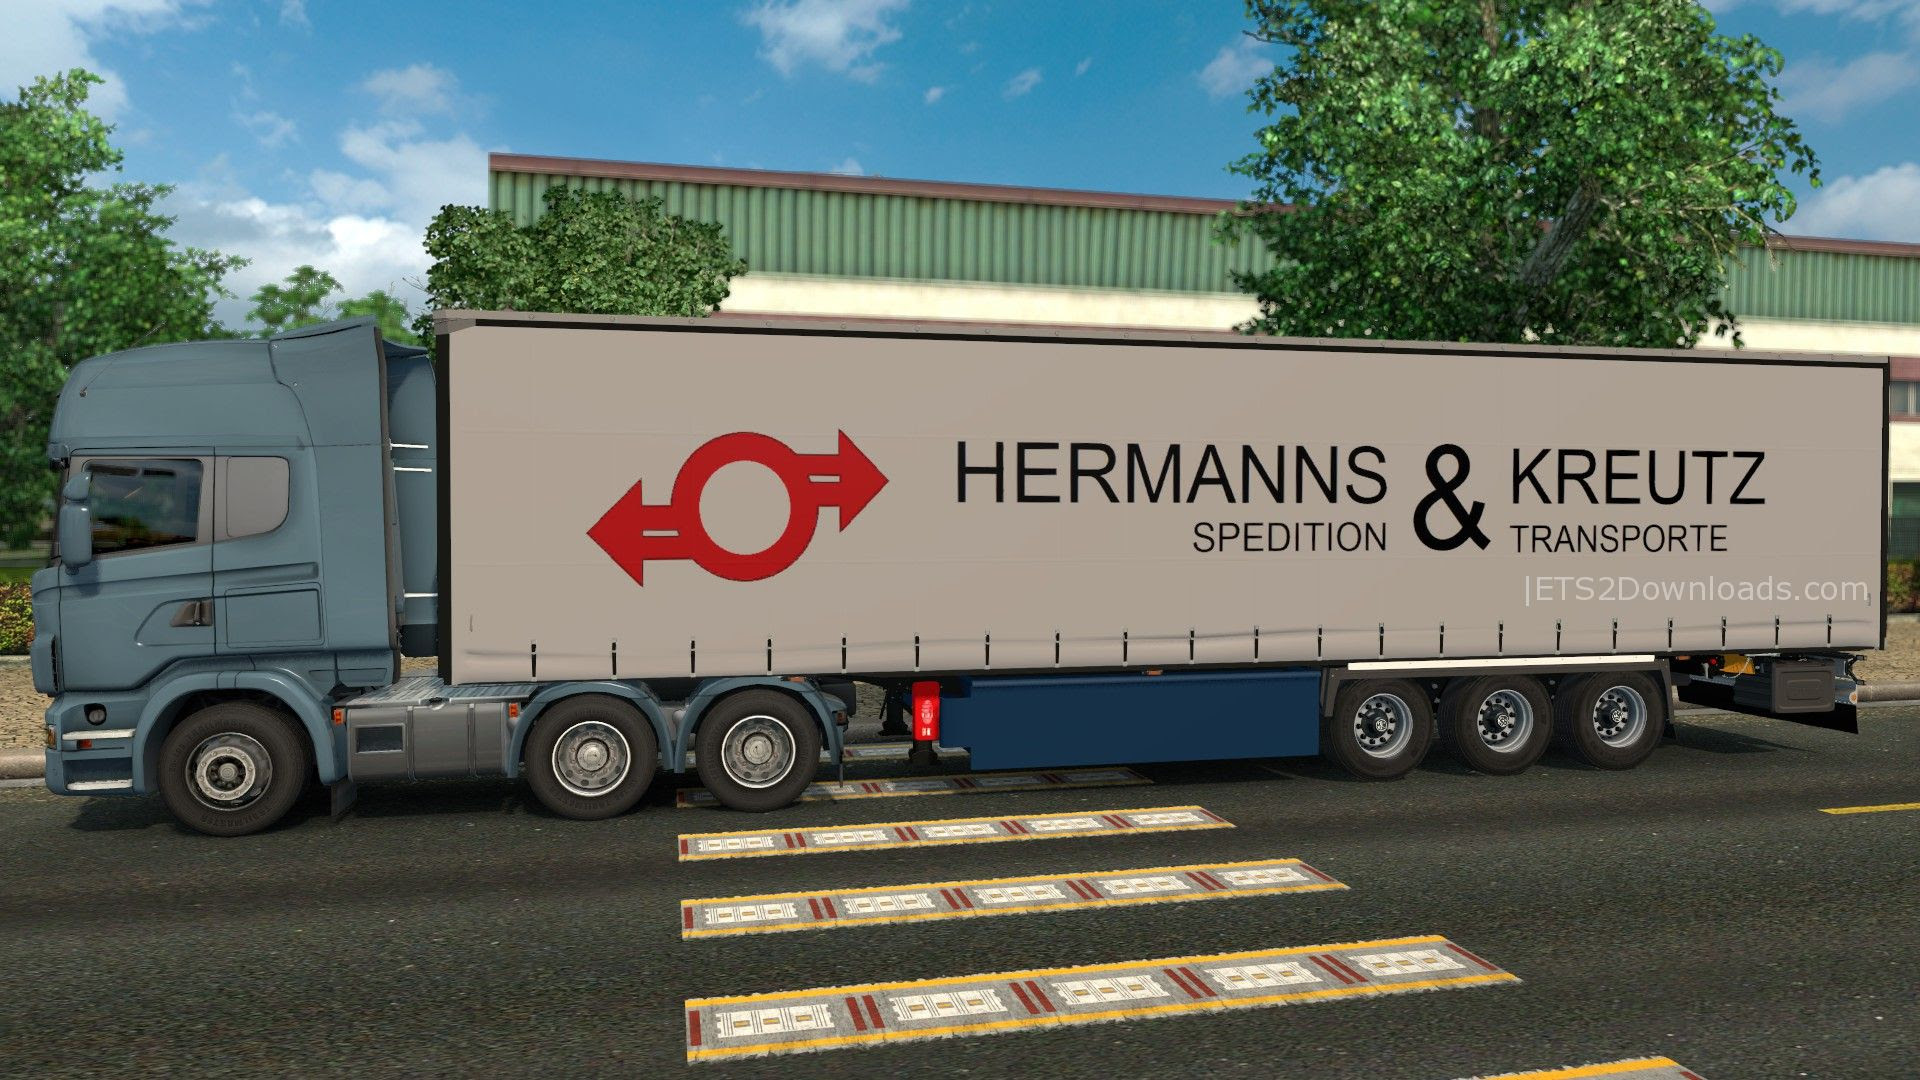 hermanns-kreutz-spedition-trailer-2